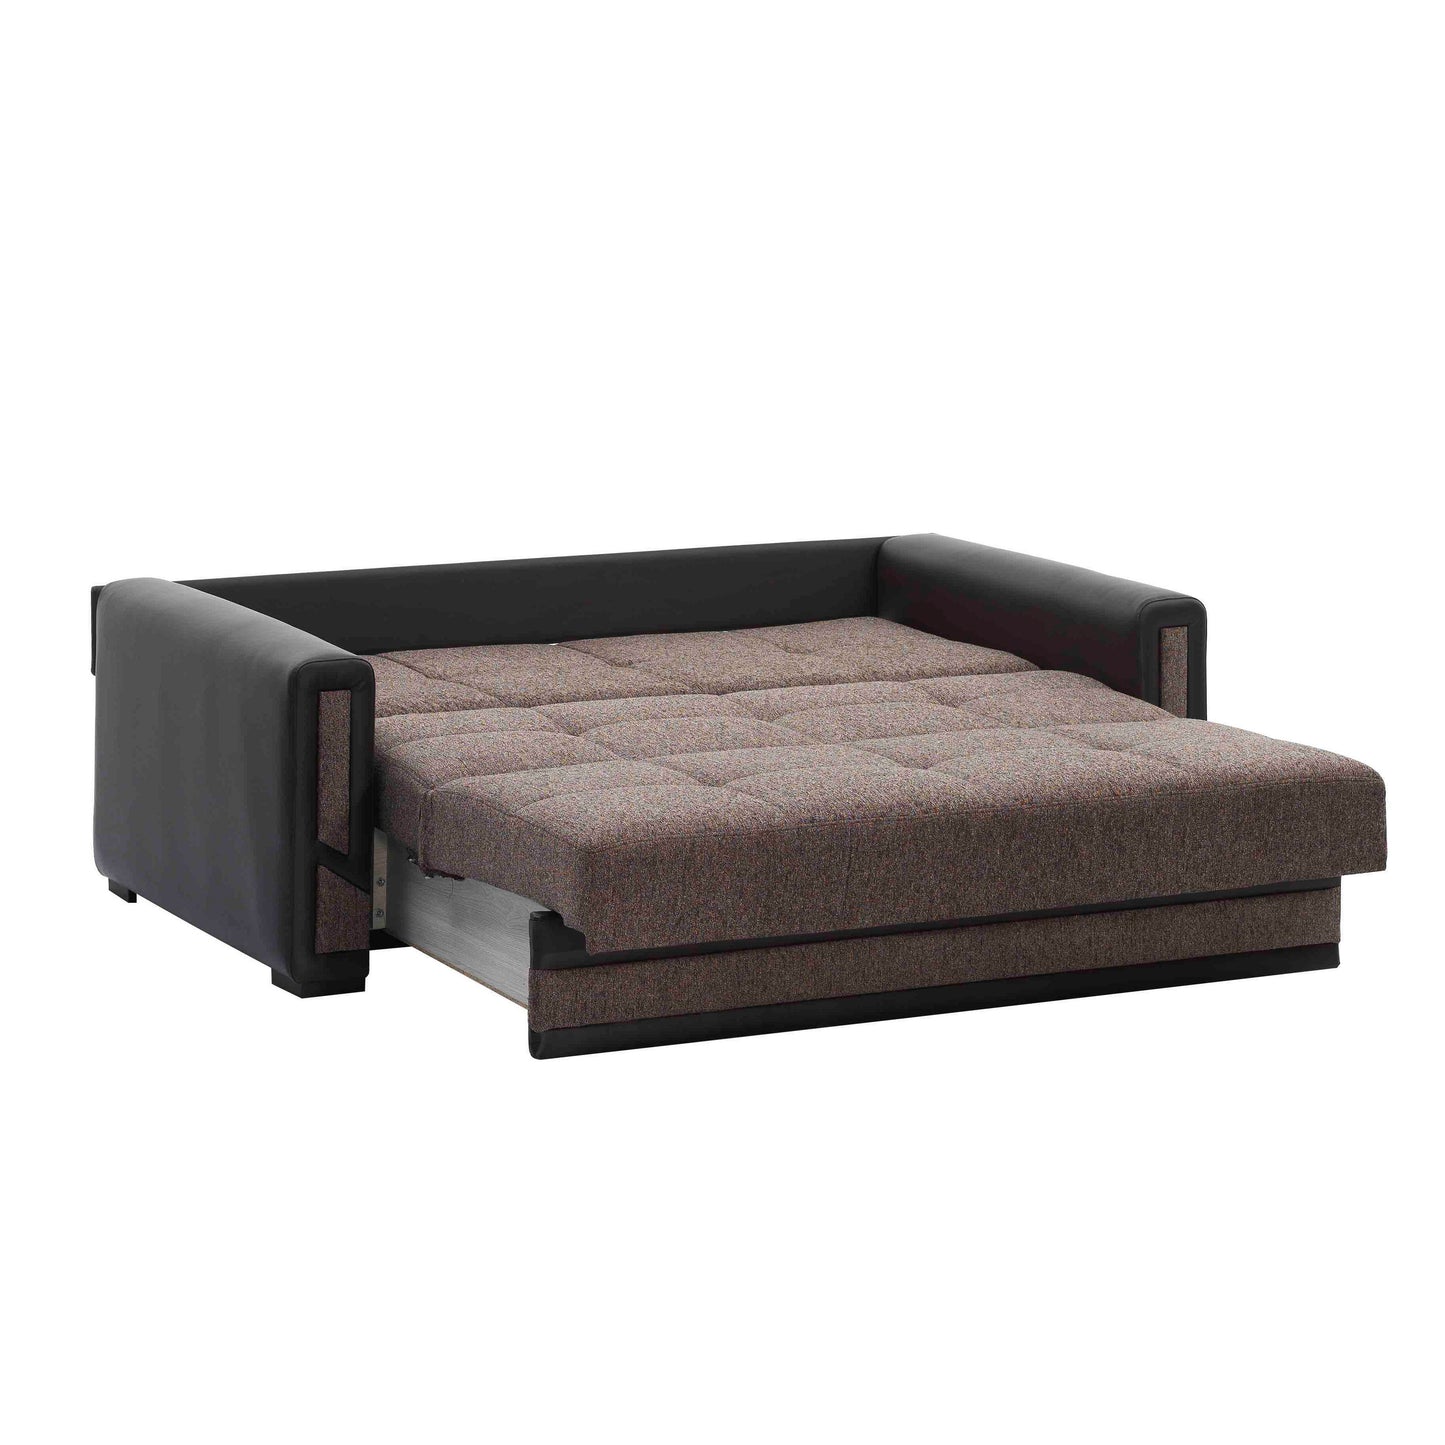 Ottomanson Mondomax - Convertible Sofa Bed With Storage